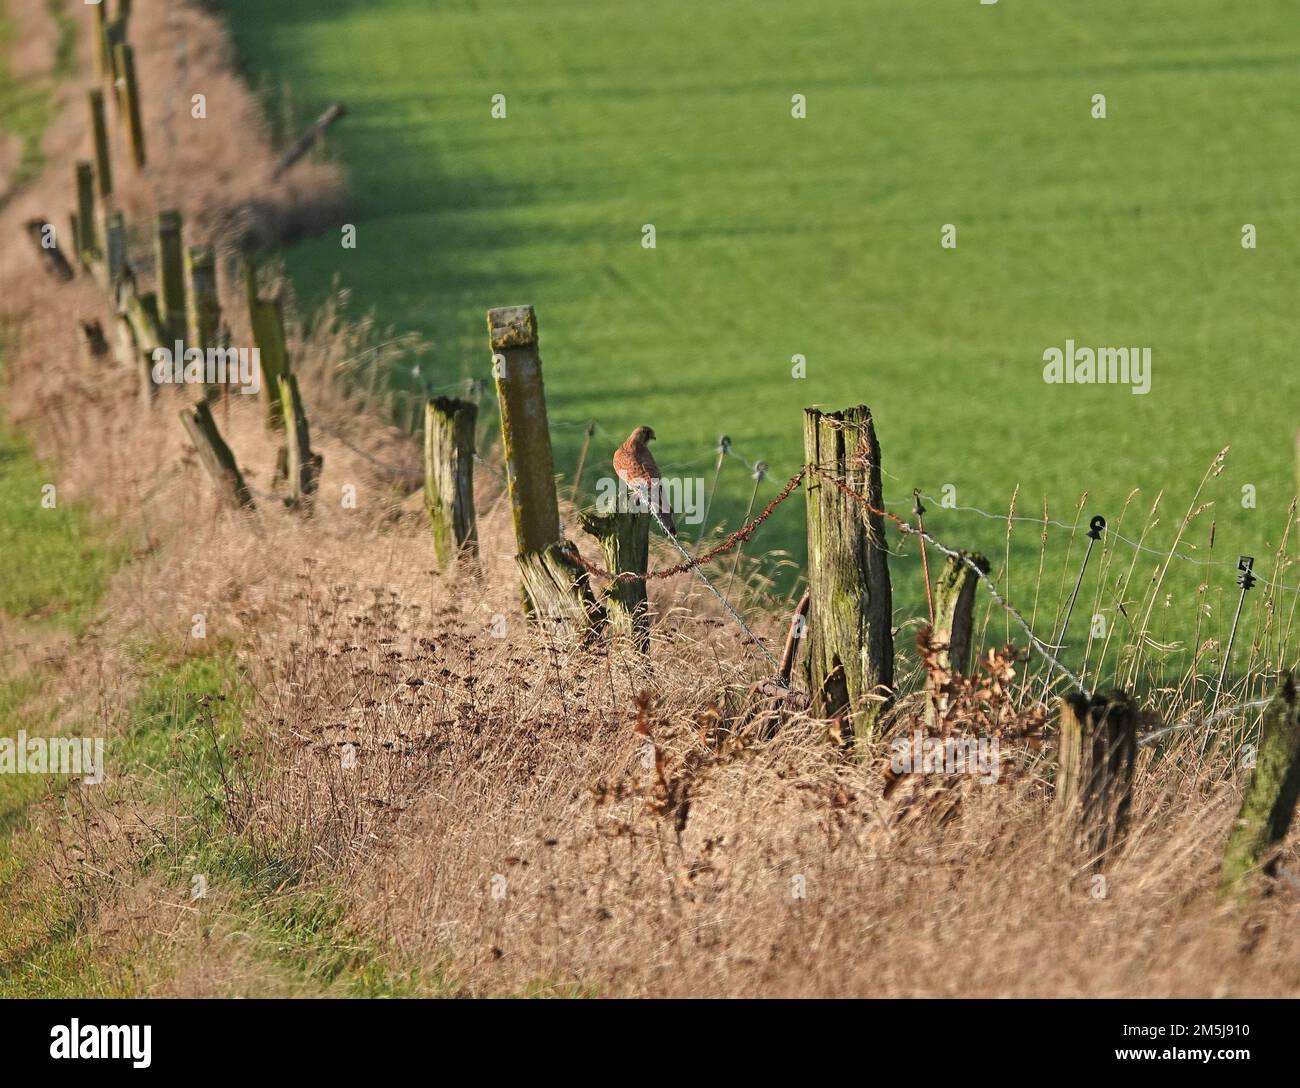 Ein schiefer rustikaler Zaun mit alten Holzpfosten und Stacheldraht. In der Mitte ist ein gewöhnlicher Falco tinnunculus (Falco tinnunculus) fast unsichtbar. Stockfoto